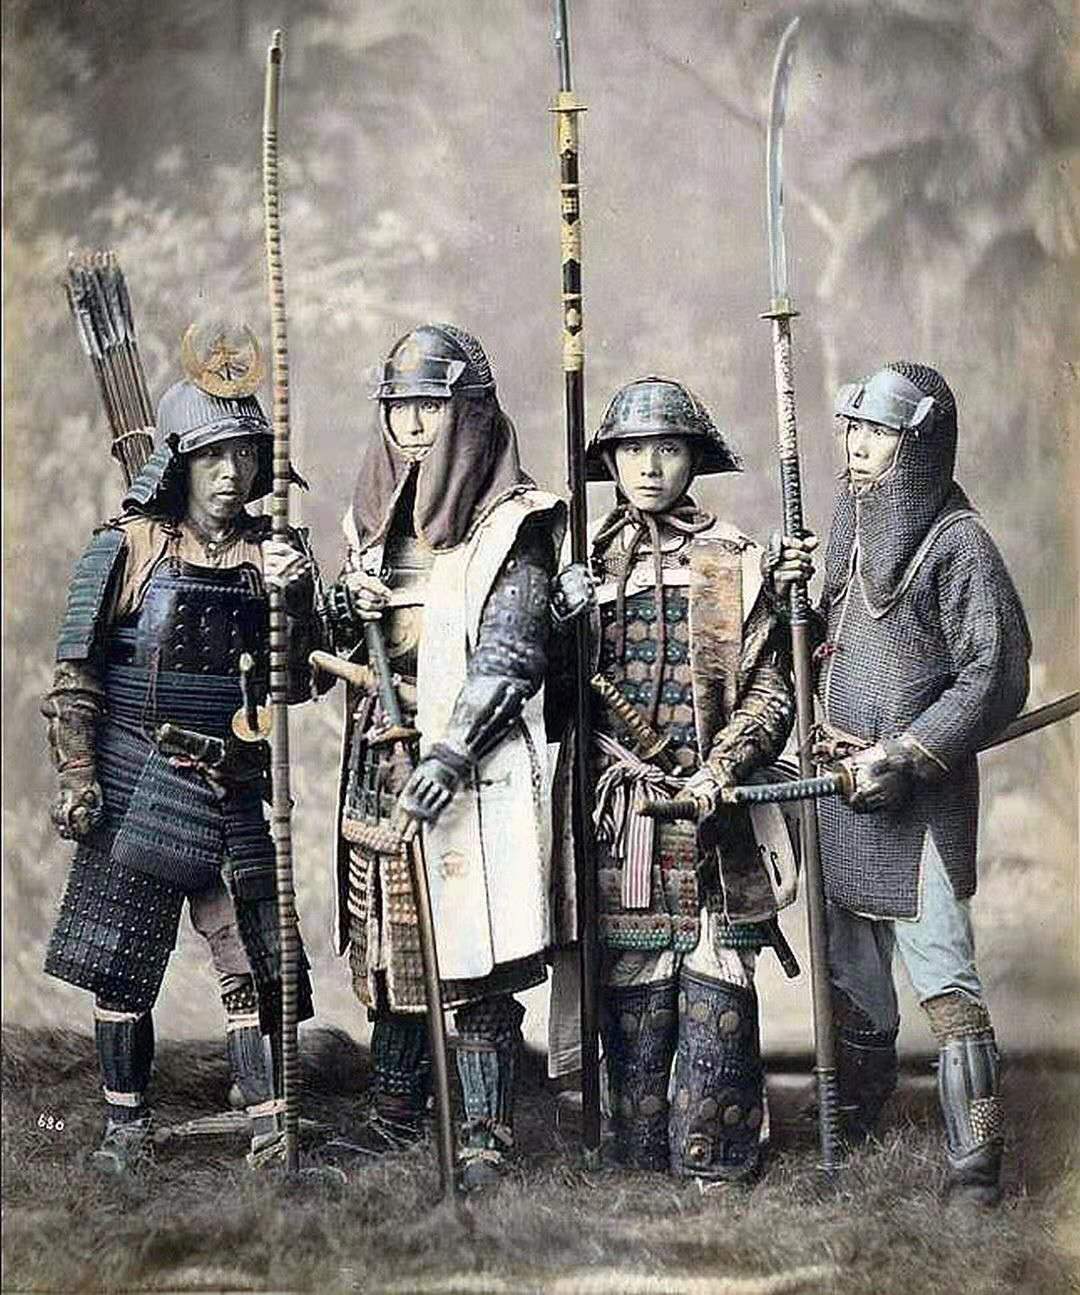 至于日本这个国家,在武士时代是很不一样的.